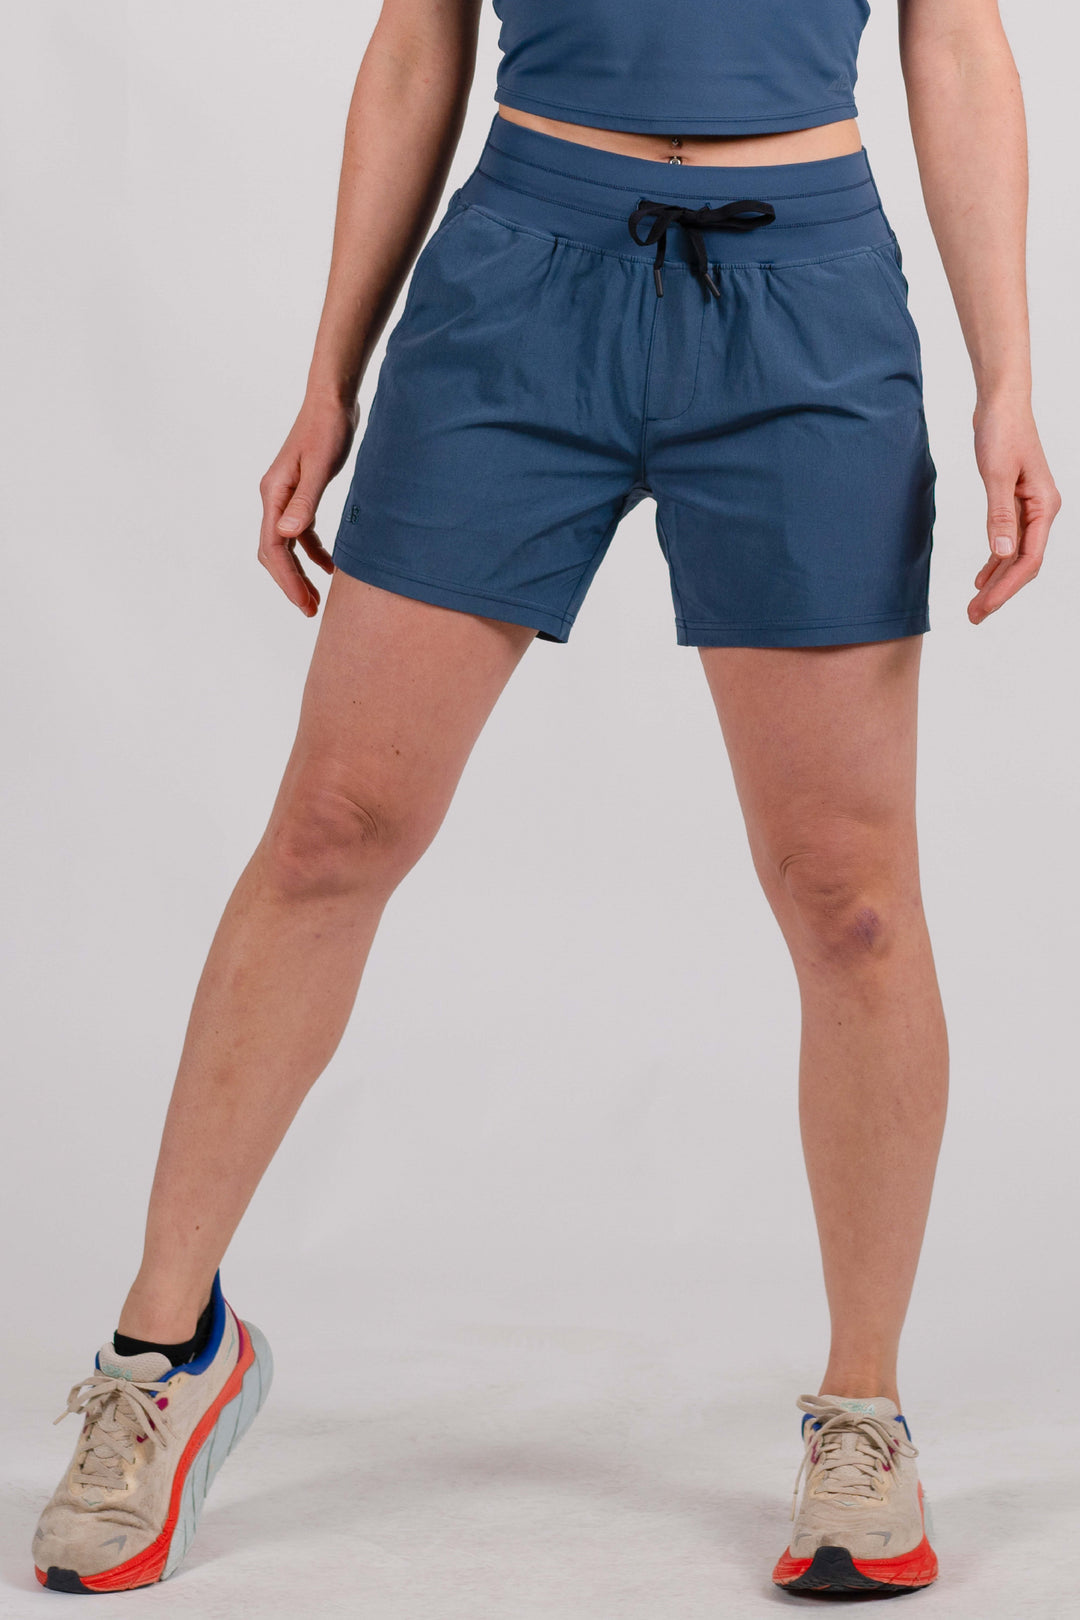 2-Pack Bundle: Women's 5" High-Rise La Plata Shorts (Size L)